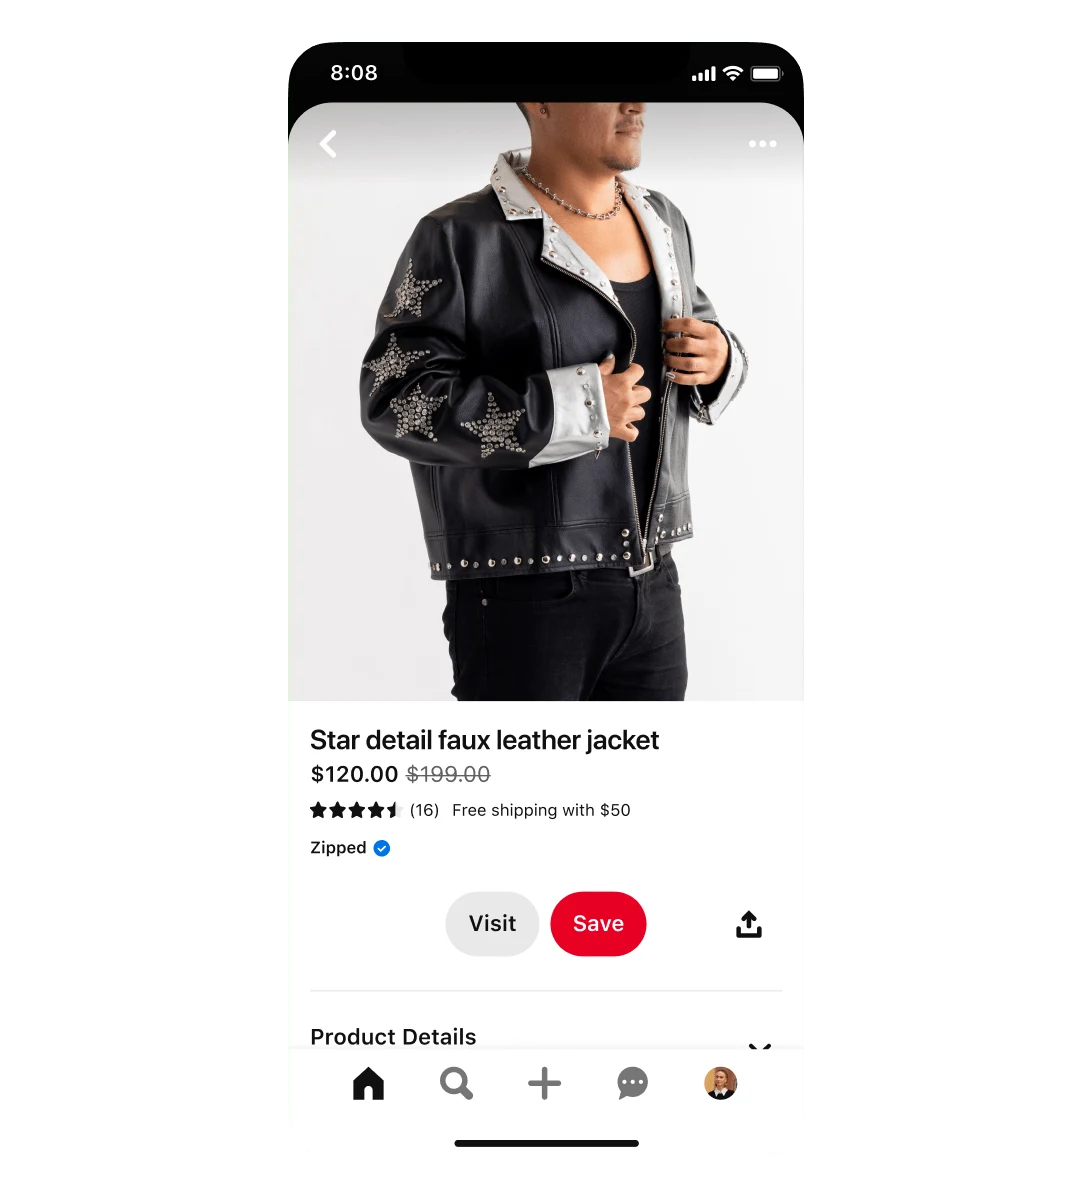 Visualização móvel de um anúncio de compras de casaco de pele sintética com pormenor de estrela. O casaco está em promoção e custa 120 dólares, em vez de 199 dólares. O anúncio apresenta um homem com o casaco vestido.